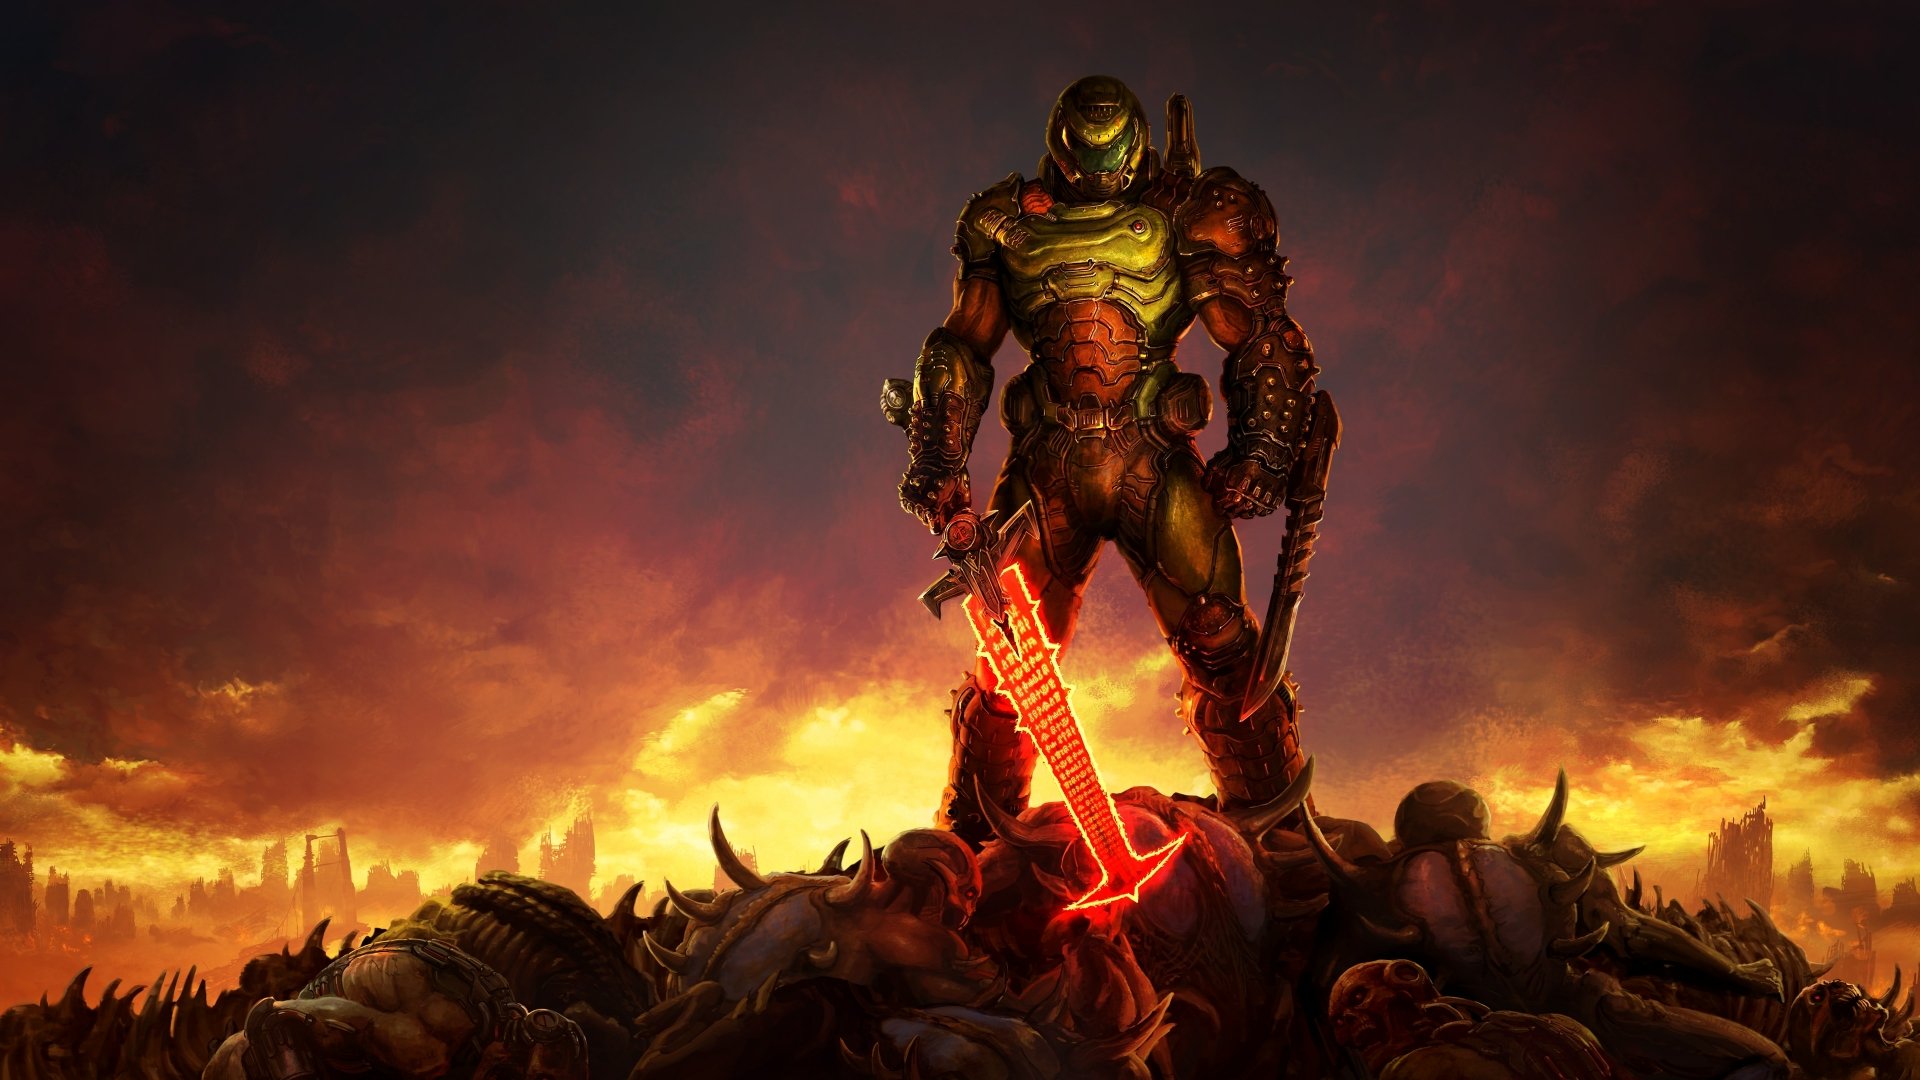 Doom Eternal 4k Wallpaper Doomguy Doom Slayer 2020 Games Images